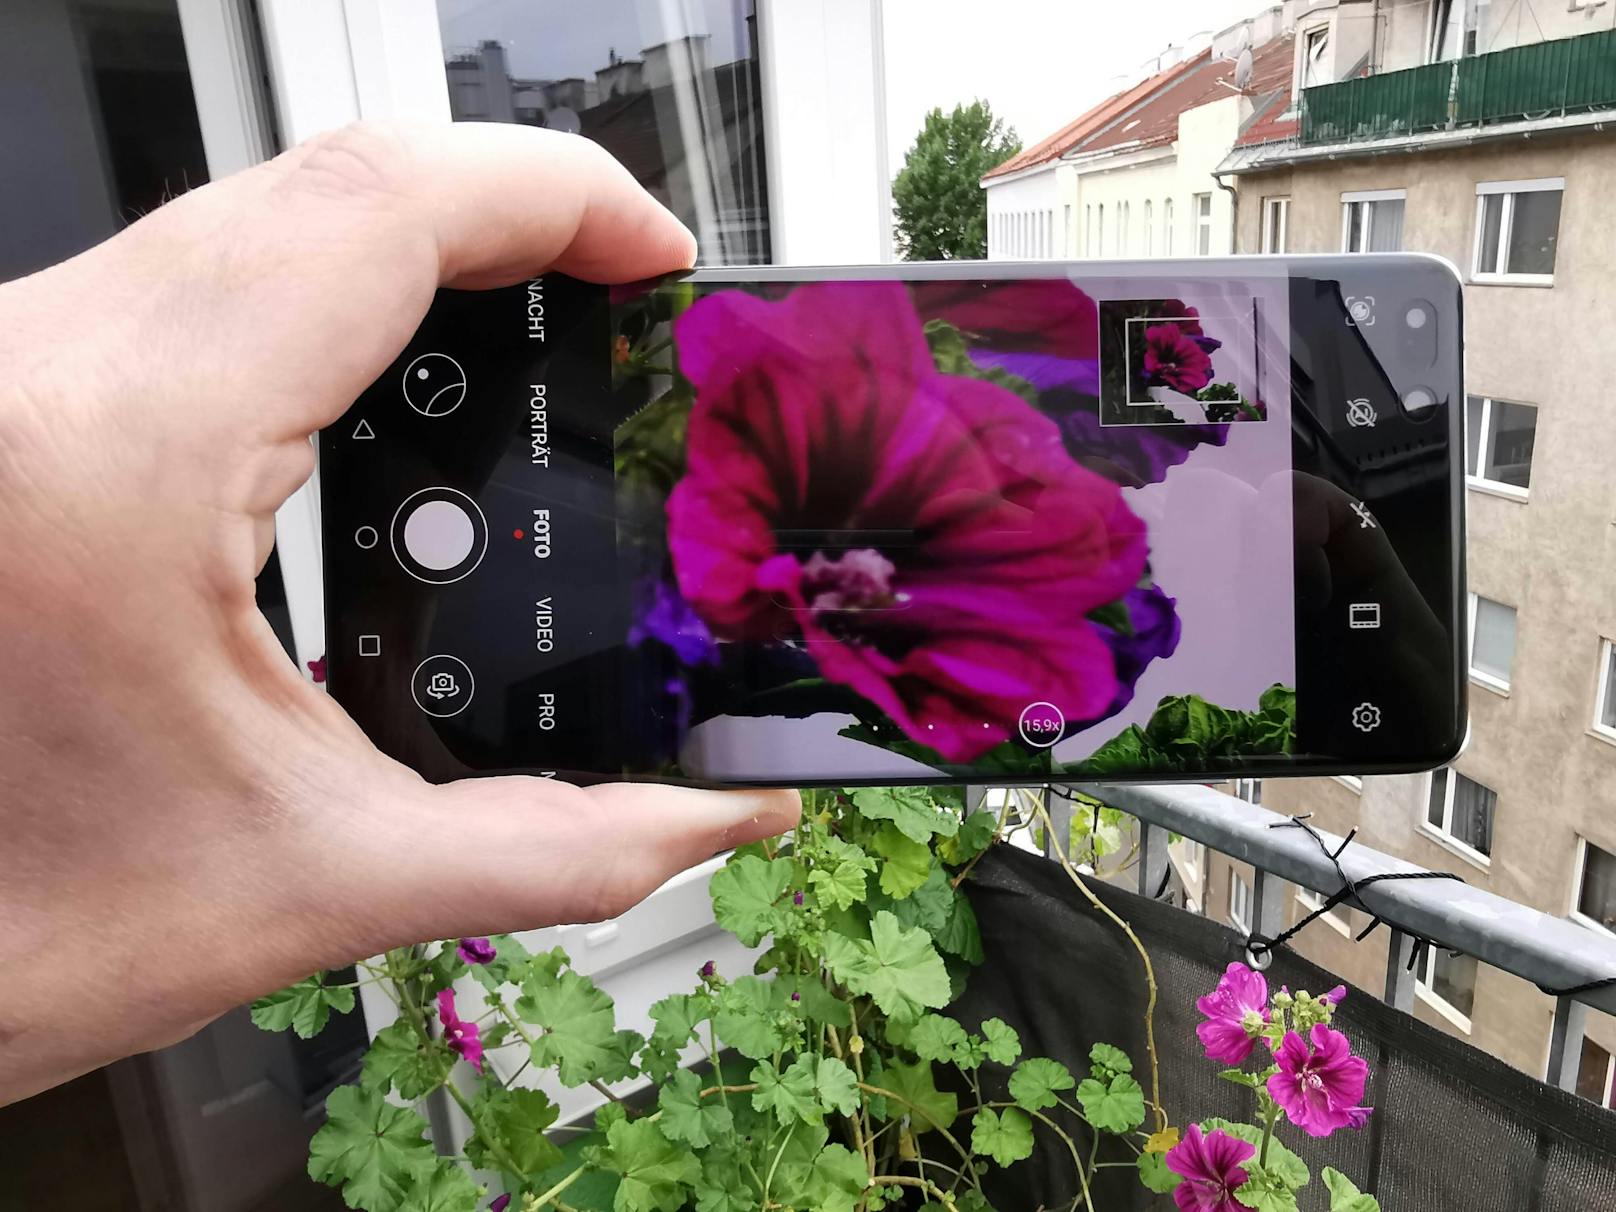 Vergrößert man über den Faktor 15, erscheint in der Kamera-App ein kleineres Fenster, das den Bildausschnitt in Originalgröße zeigt.